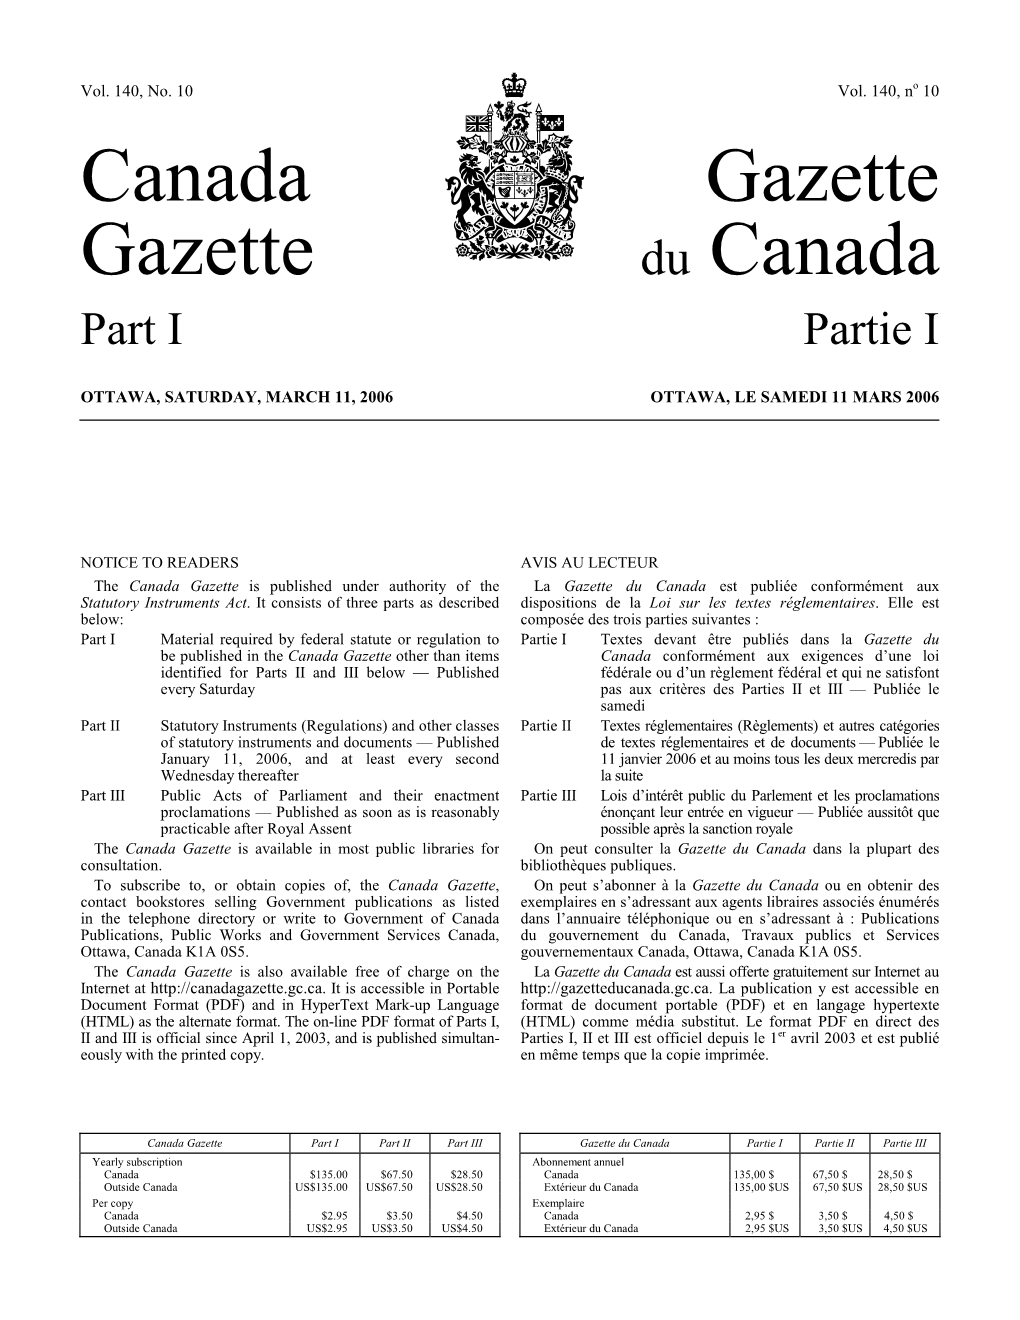 Canada Gazette, Part I, January 31, 1998 1 Supplément, Gazette Du Canada, Partie I, 31 Janvier 1998